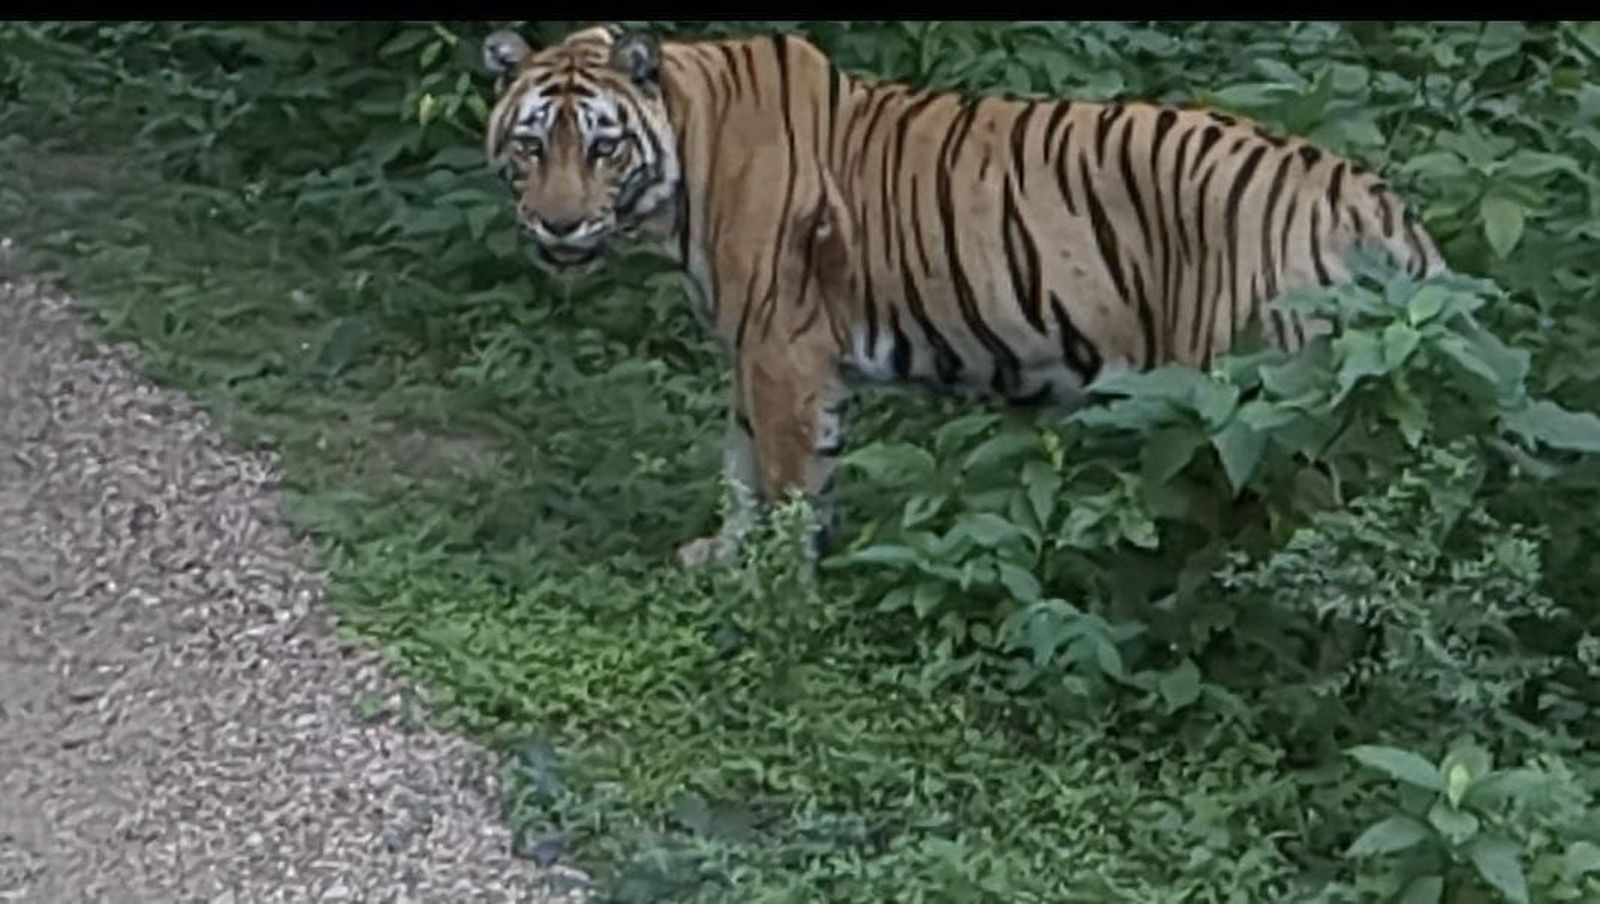 सरिस्का के बाघ कहीं आबादी में नहीं जा रहे